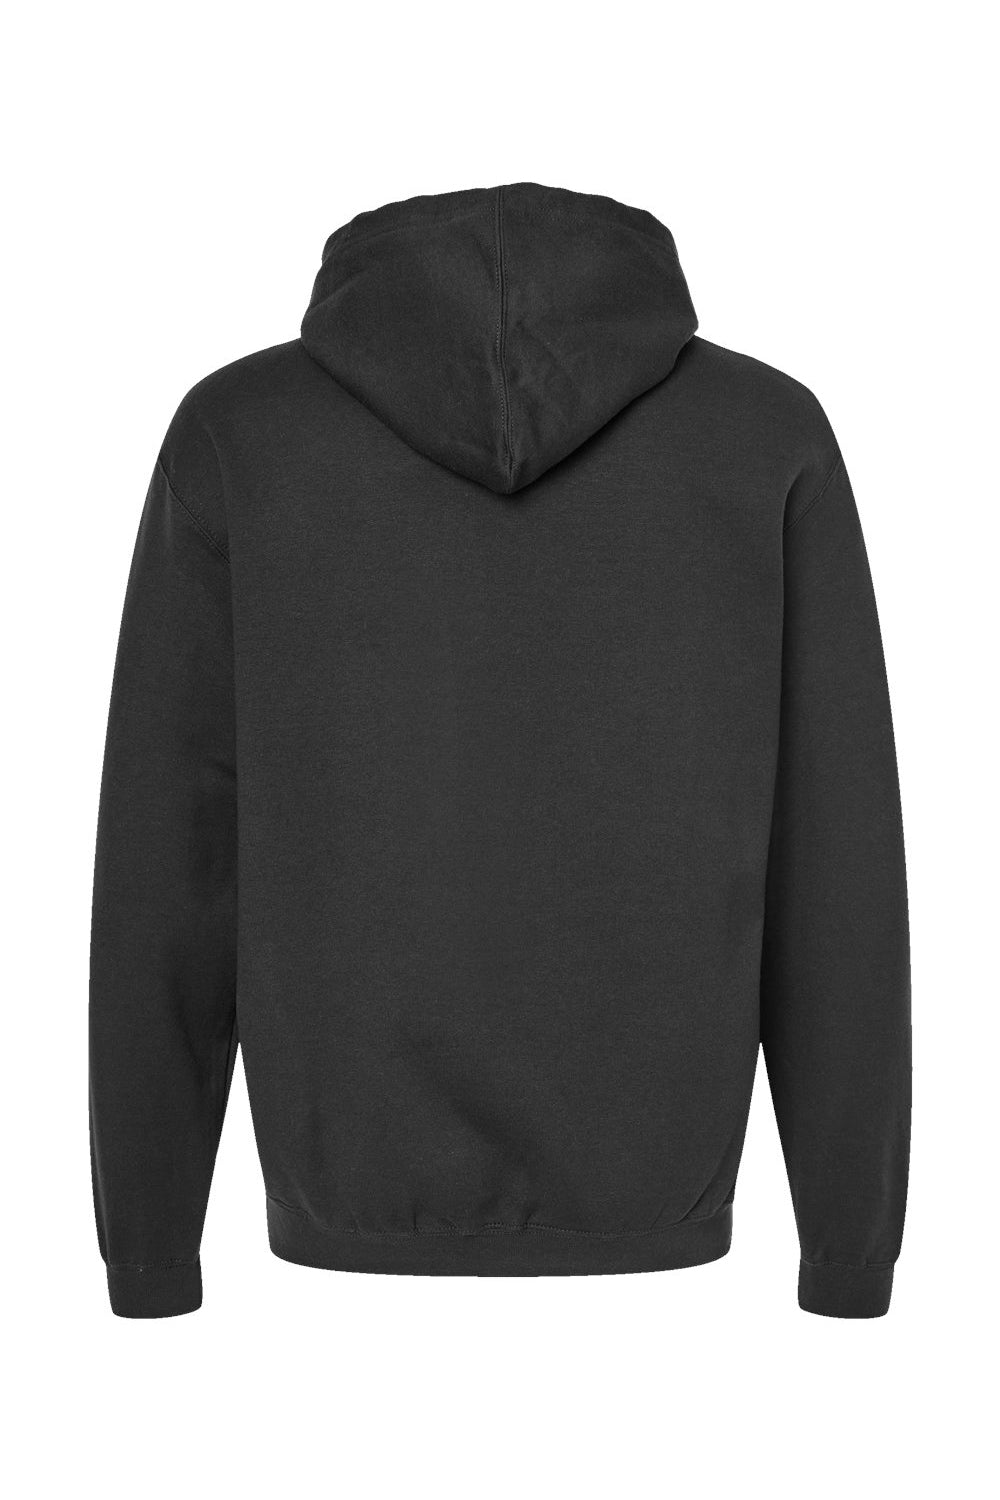 Tultex 320 Mens Fleece Hooded Sweatshirt Hoodie Black Flat Back